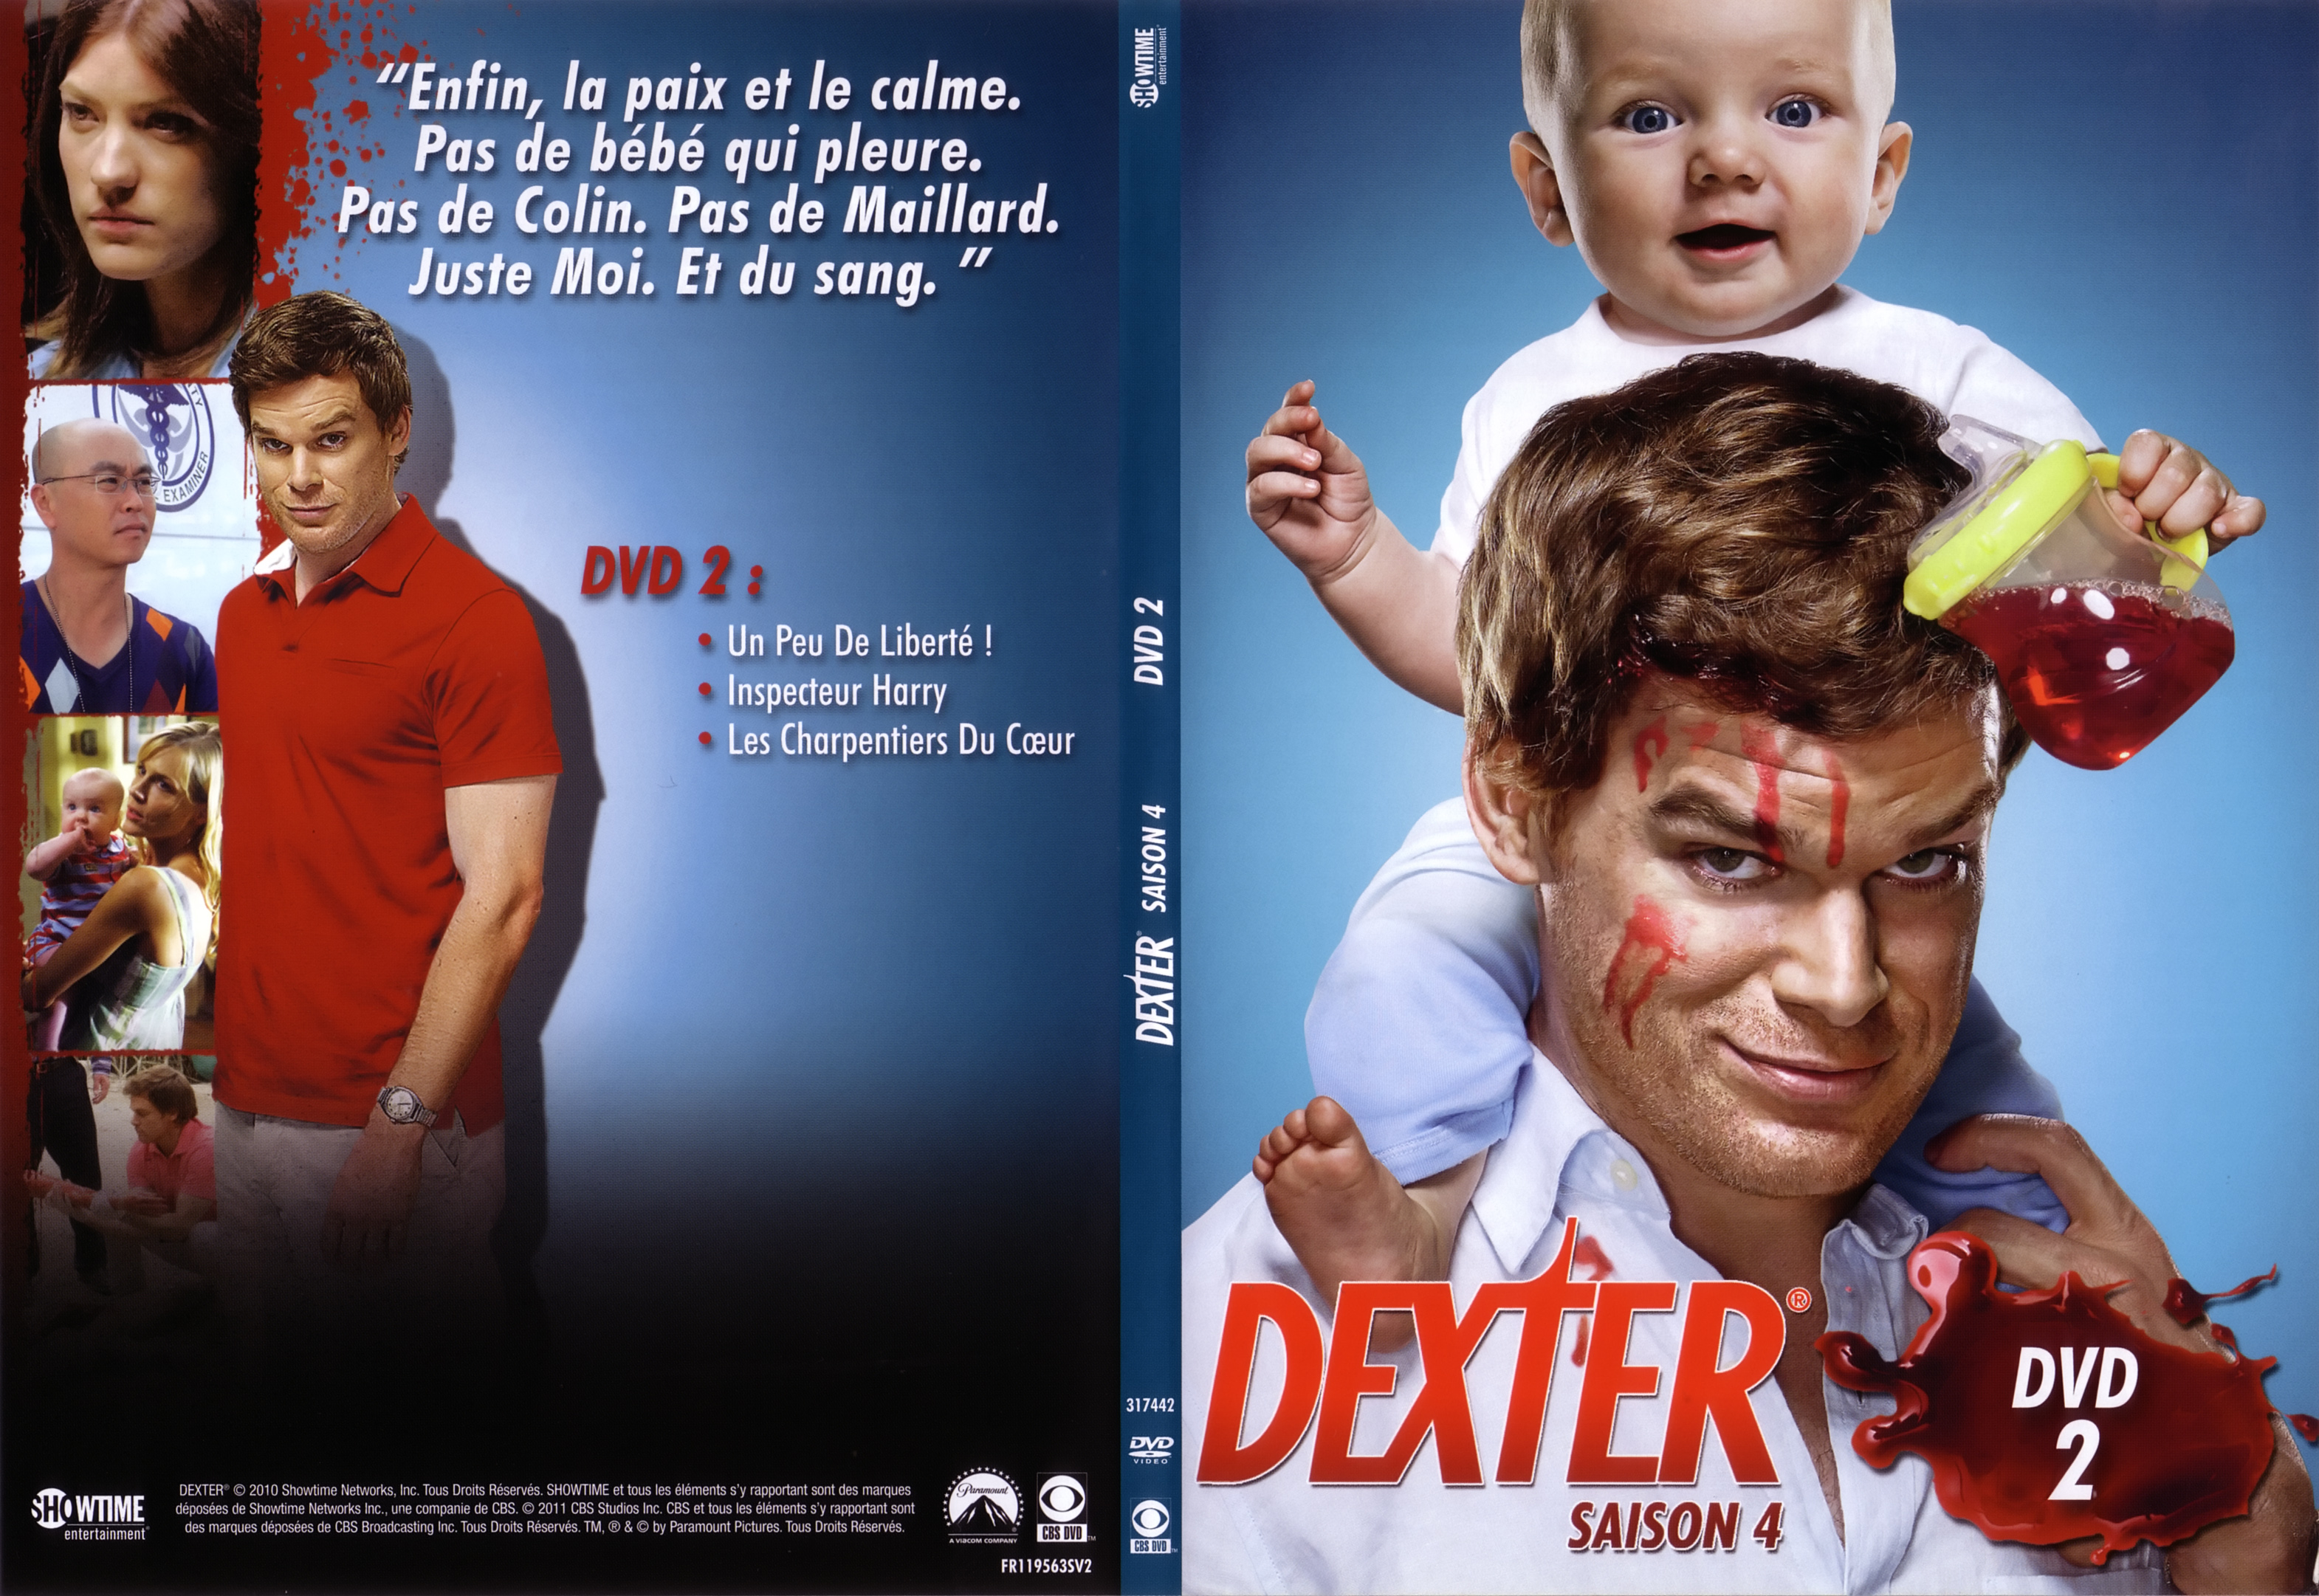 Jaquette DVD Dexter Saison 4 DVD 2